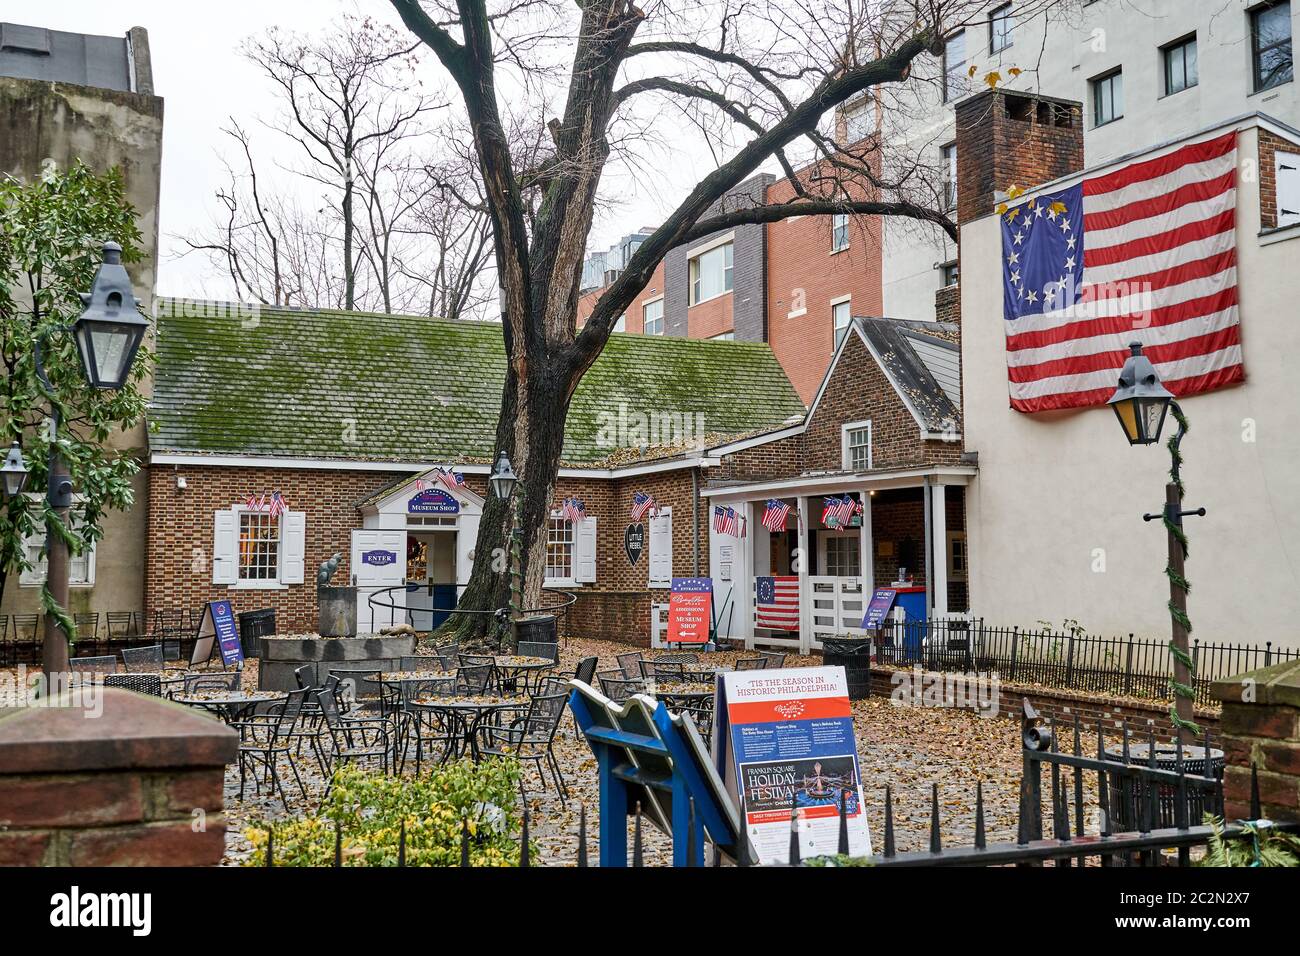 Filadelfia, EE.UU. - 14 de diciembre de 2019: Casa Betsy Ross. La casa de Betsy Ross es un hito en Filadelfia, el lugar donde vive la bandera Betsy Ross Foto de stock